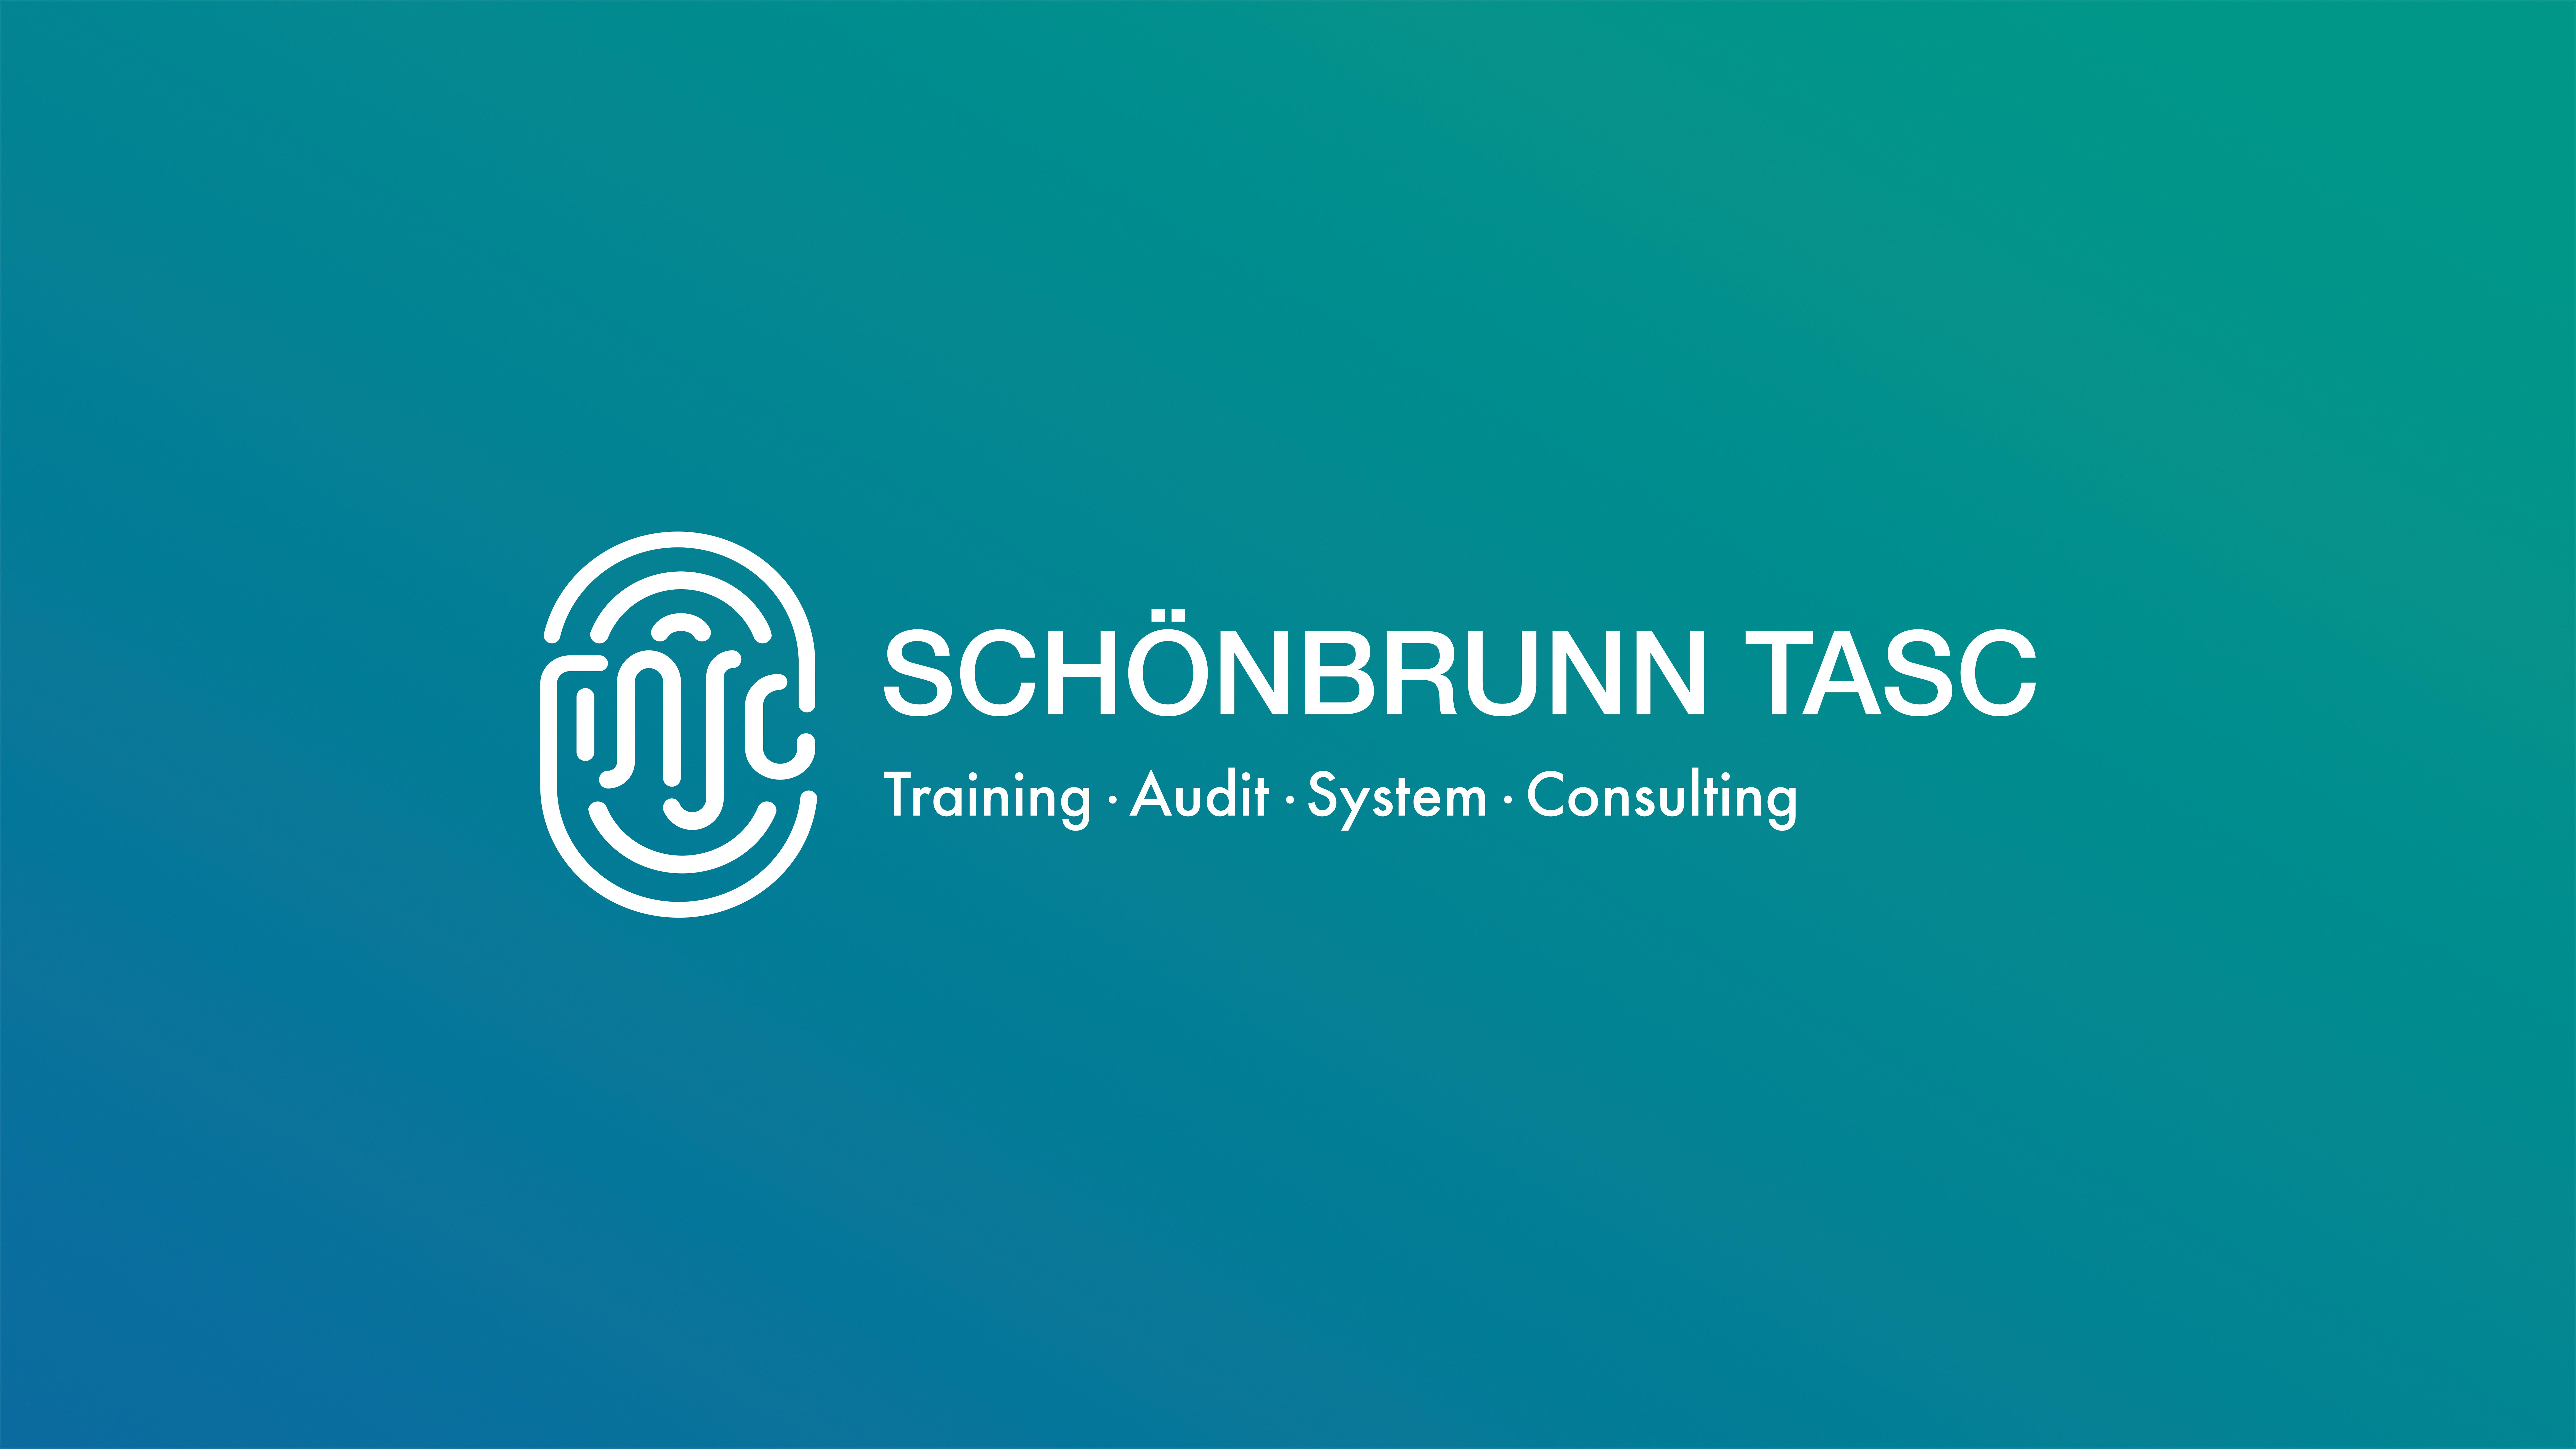 Schönbrunn TASC / startup von Leonberg / Background